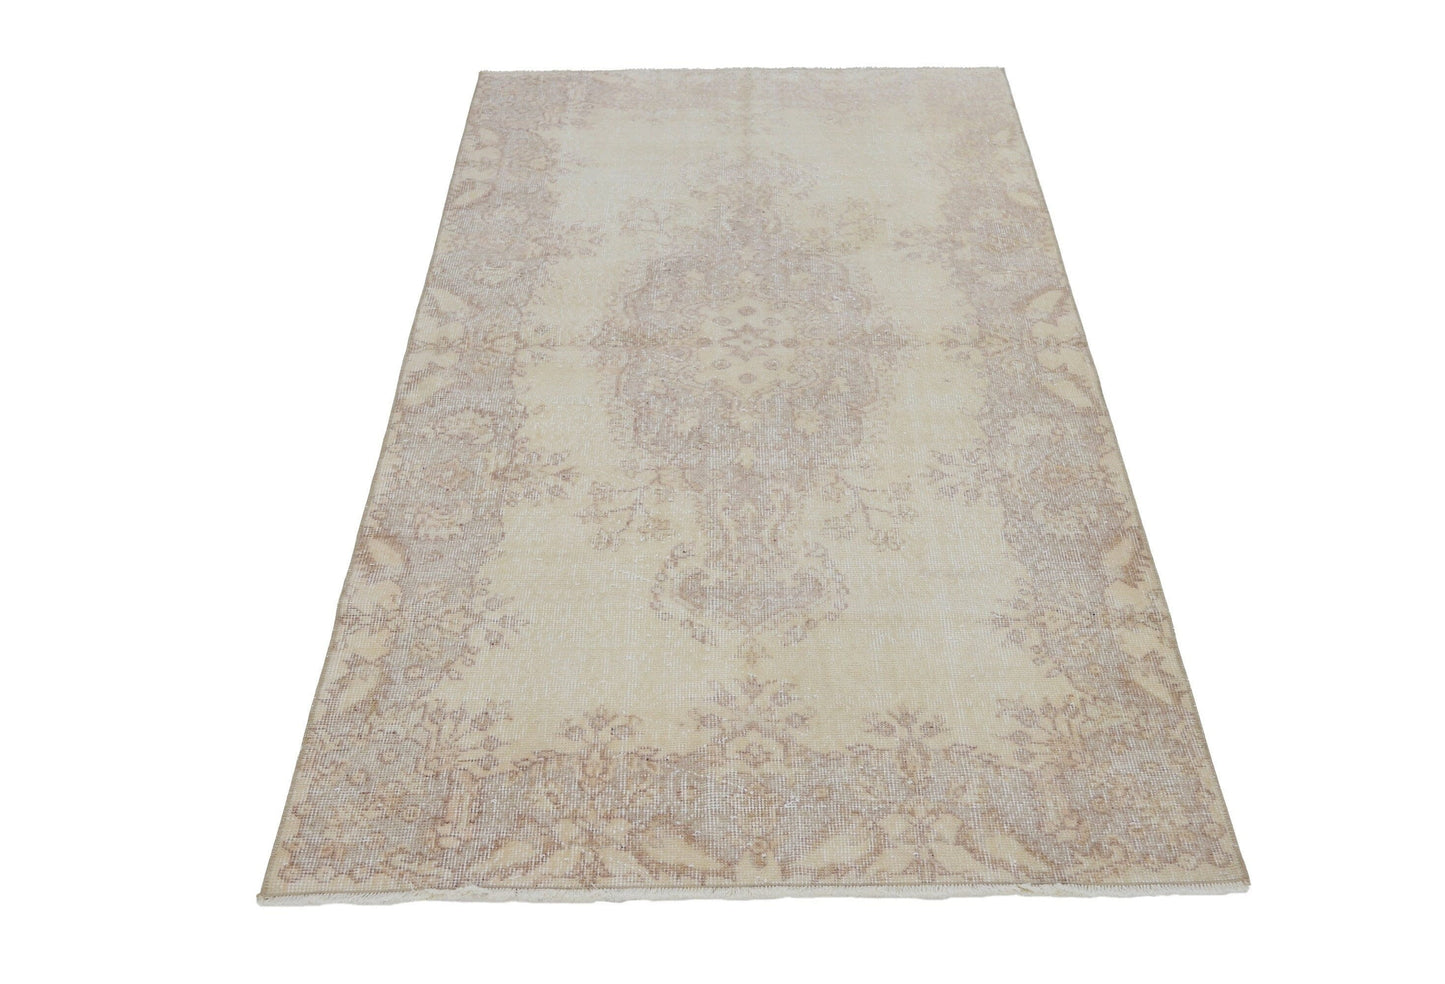 Oushak rug,Turkish rug,Vintage rug,Small rug,Bedroom rug,Small Oushak rug,Faded rug,Beige rug 4x7,Vintage Turkish Oushak rug 4x7,7121